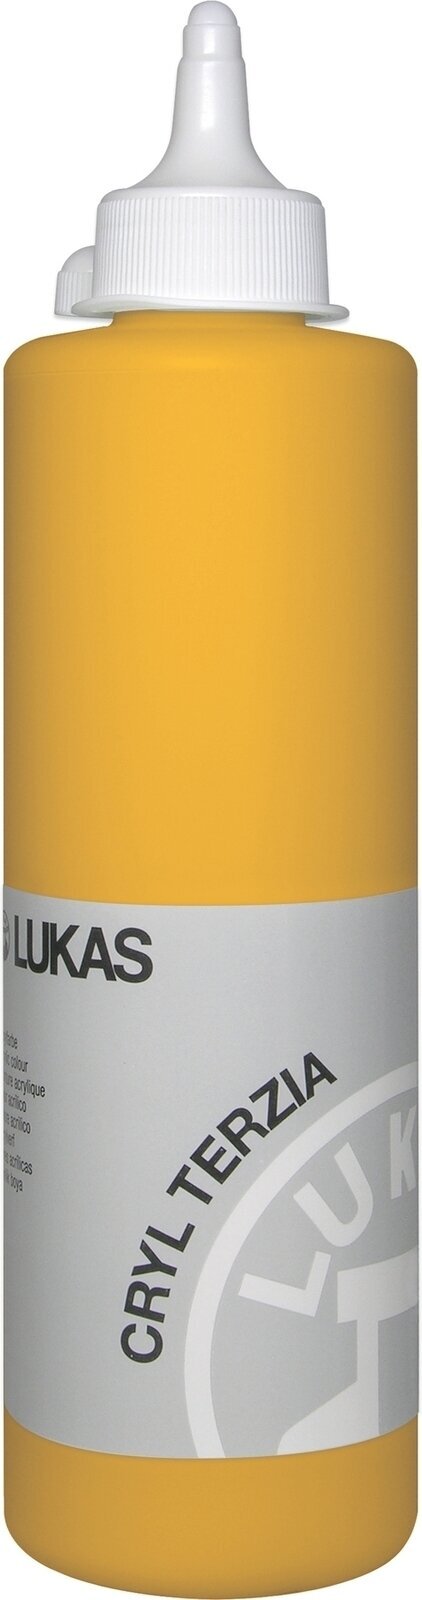 Acrylfarbe Lukas Cryl Terzia Acrylfarbe 500 ml Indian Yellow